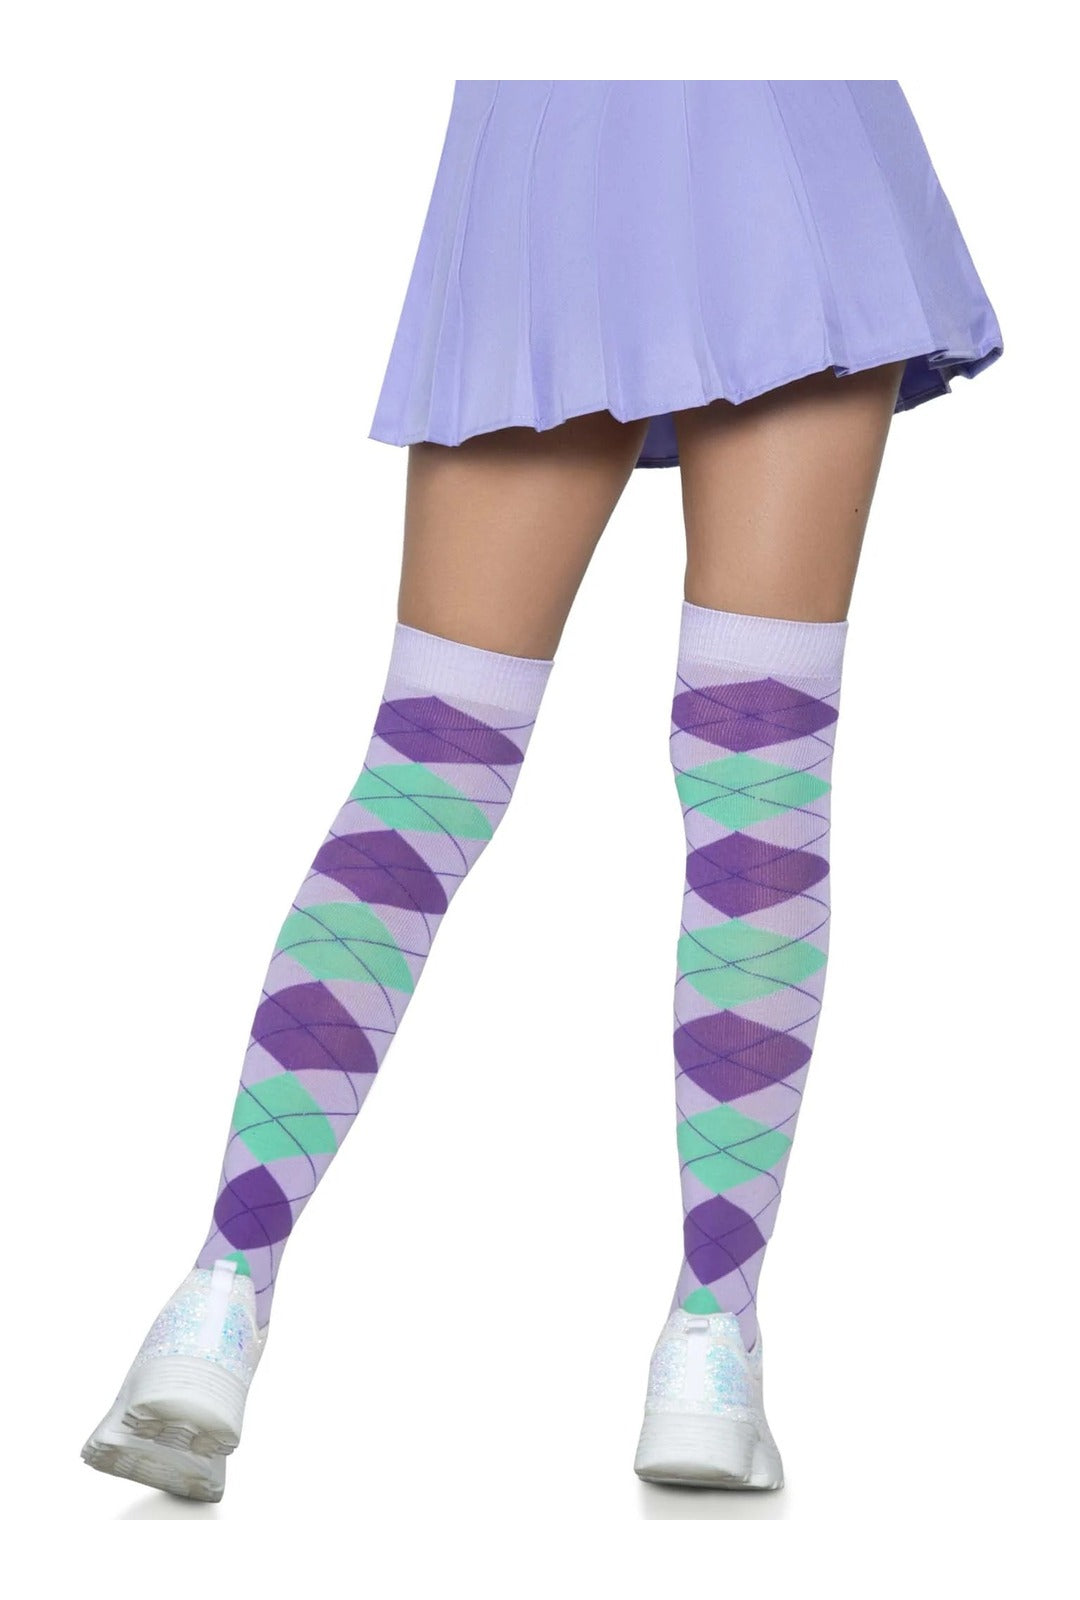 Lavender Argyle Over The Knee Socks